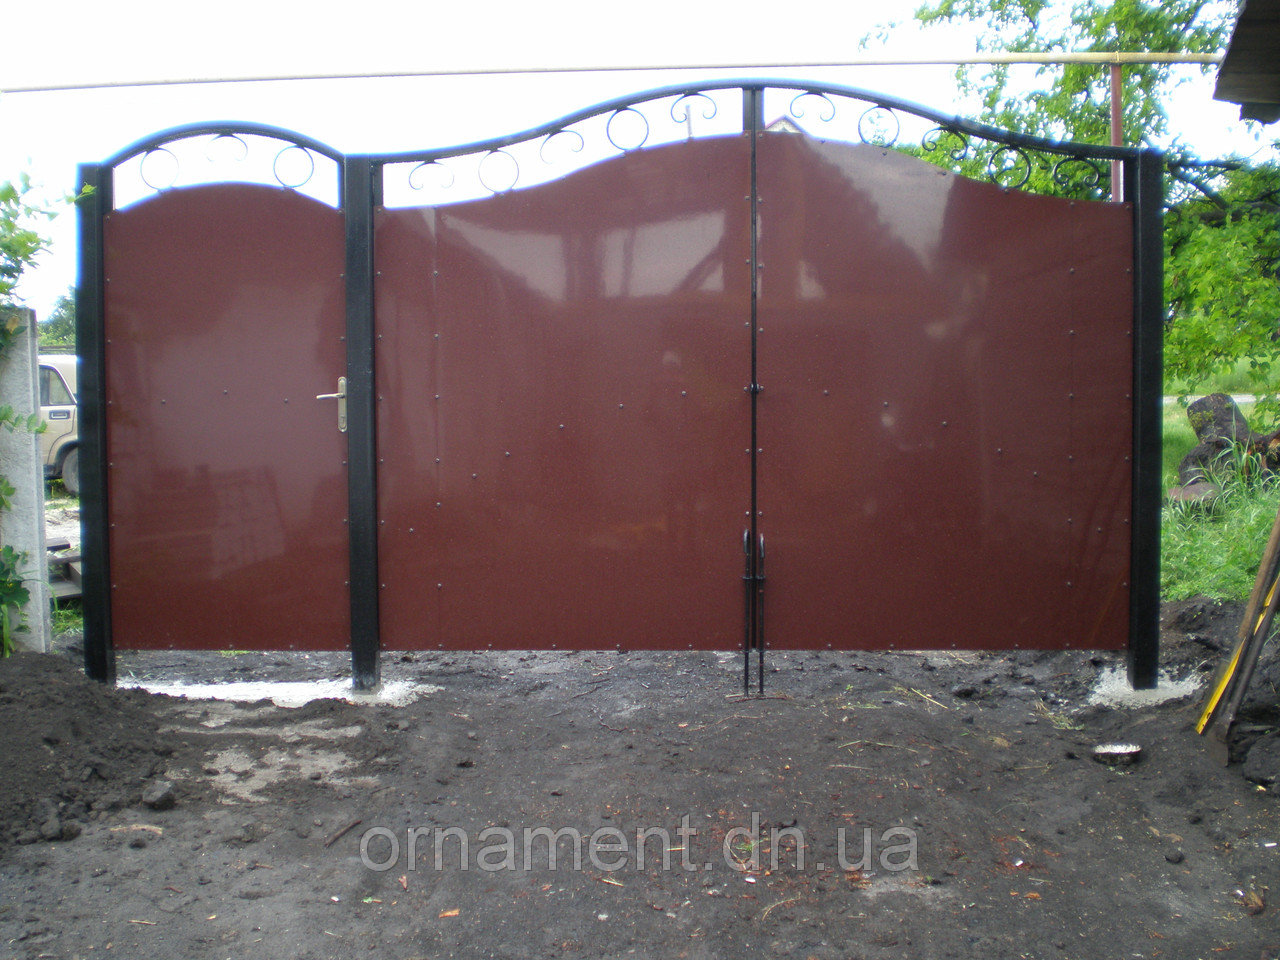 Ворота кованые + композит M190K